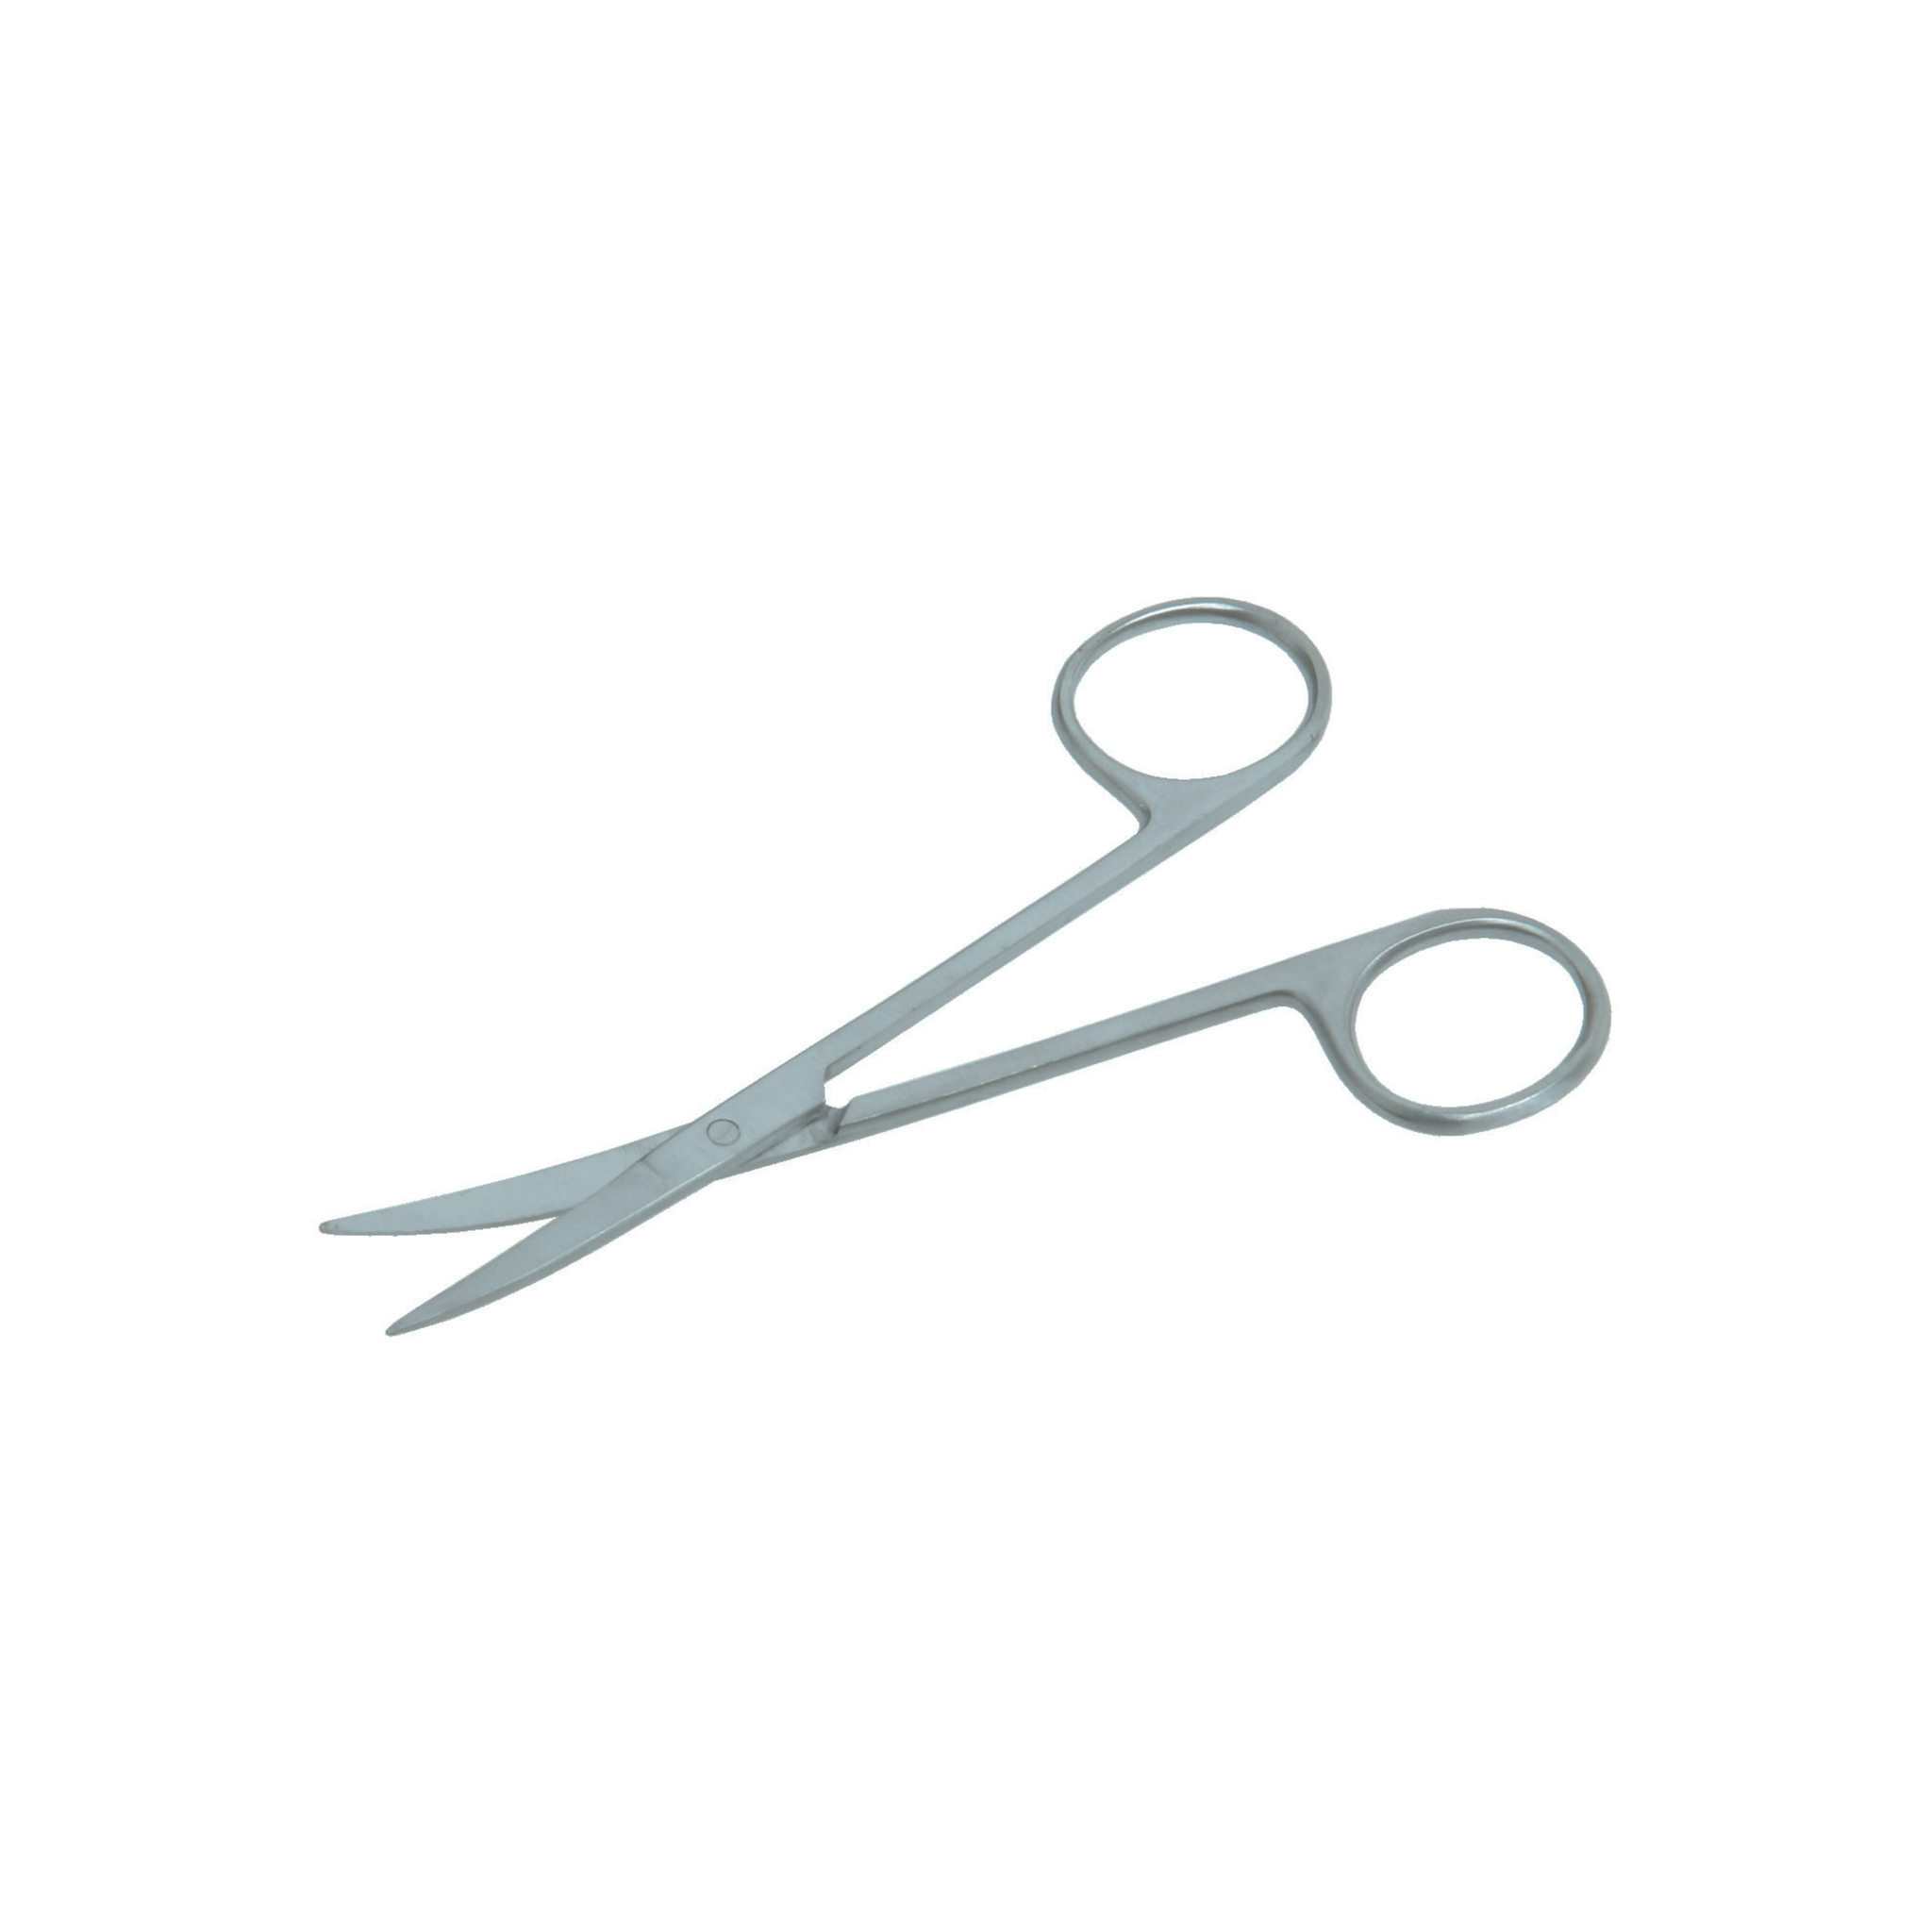 Iris Dissecting Scissors- Curved, 11.5 cm